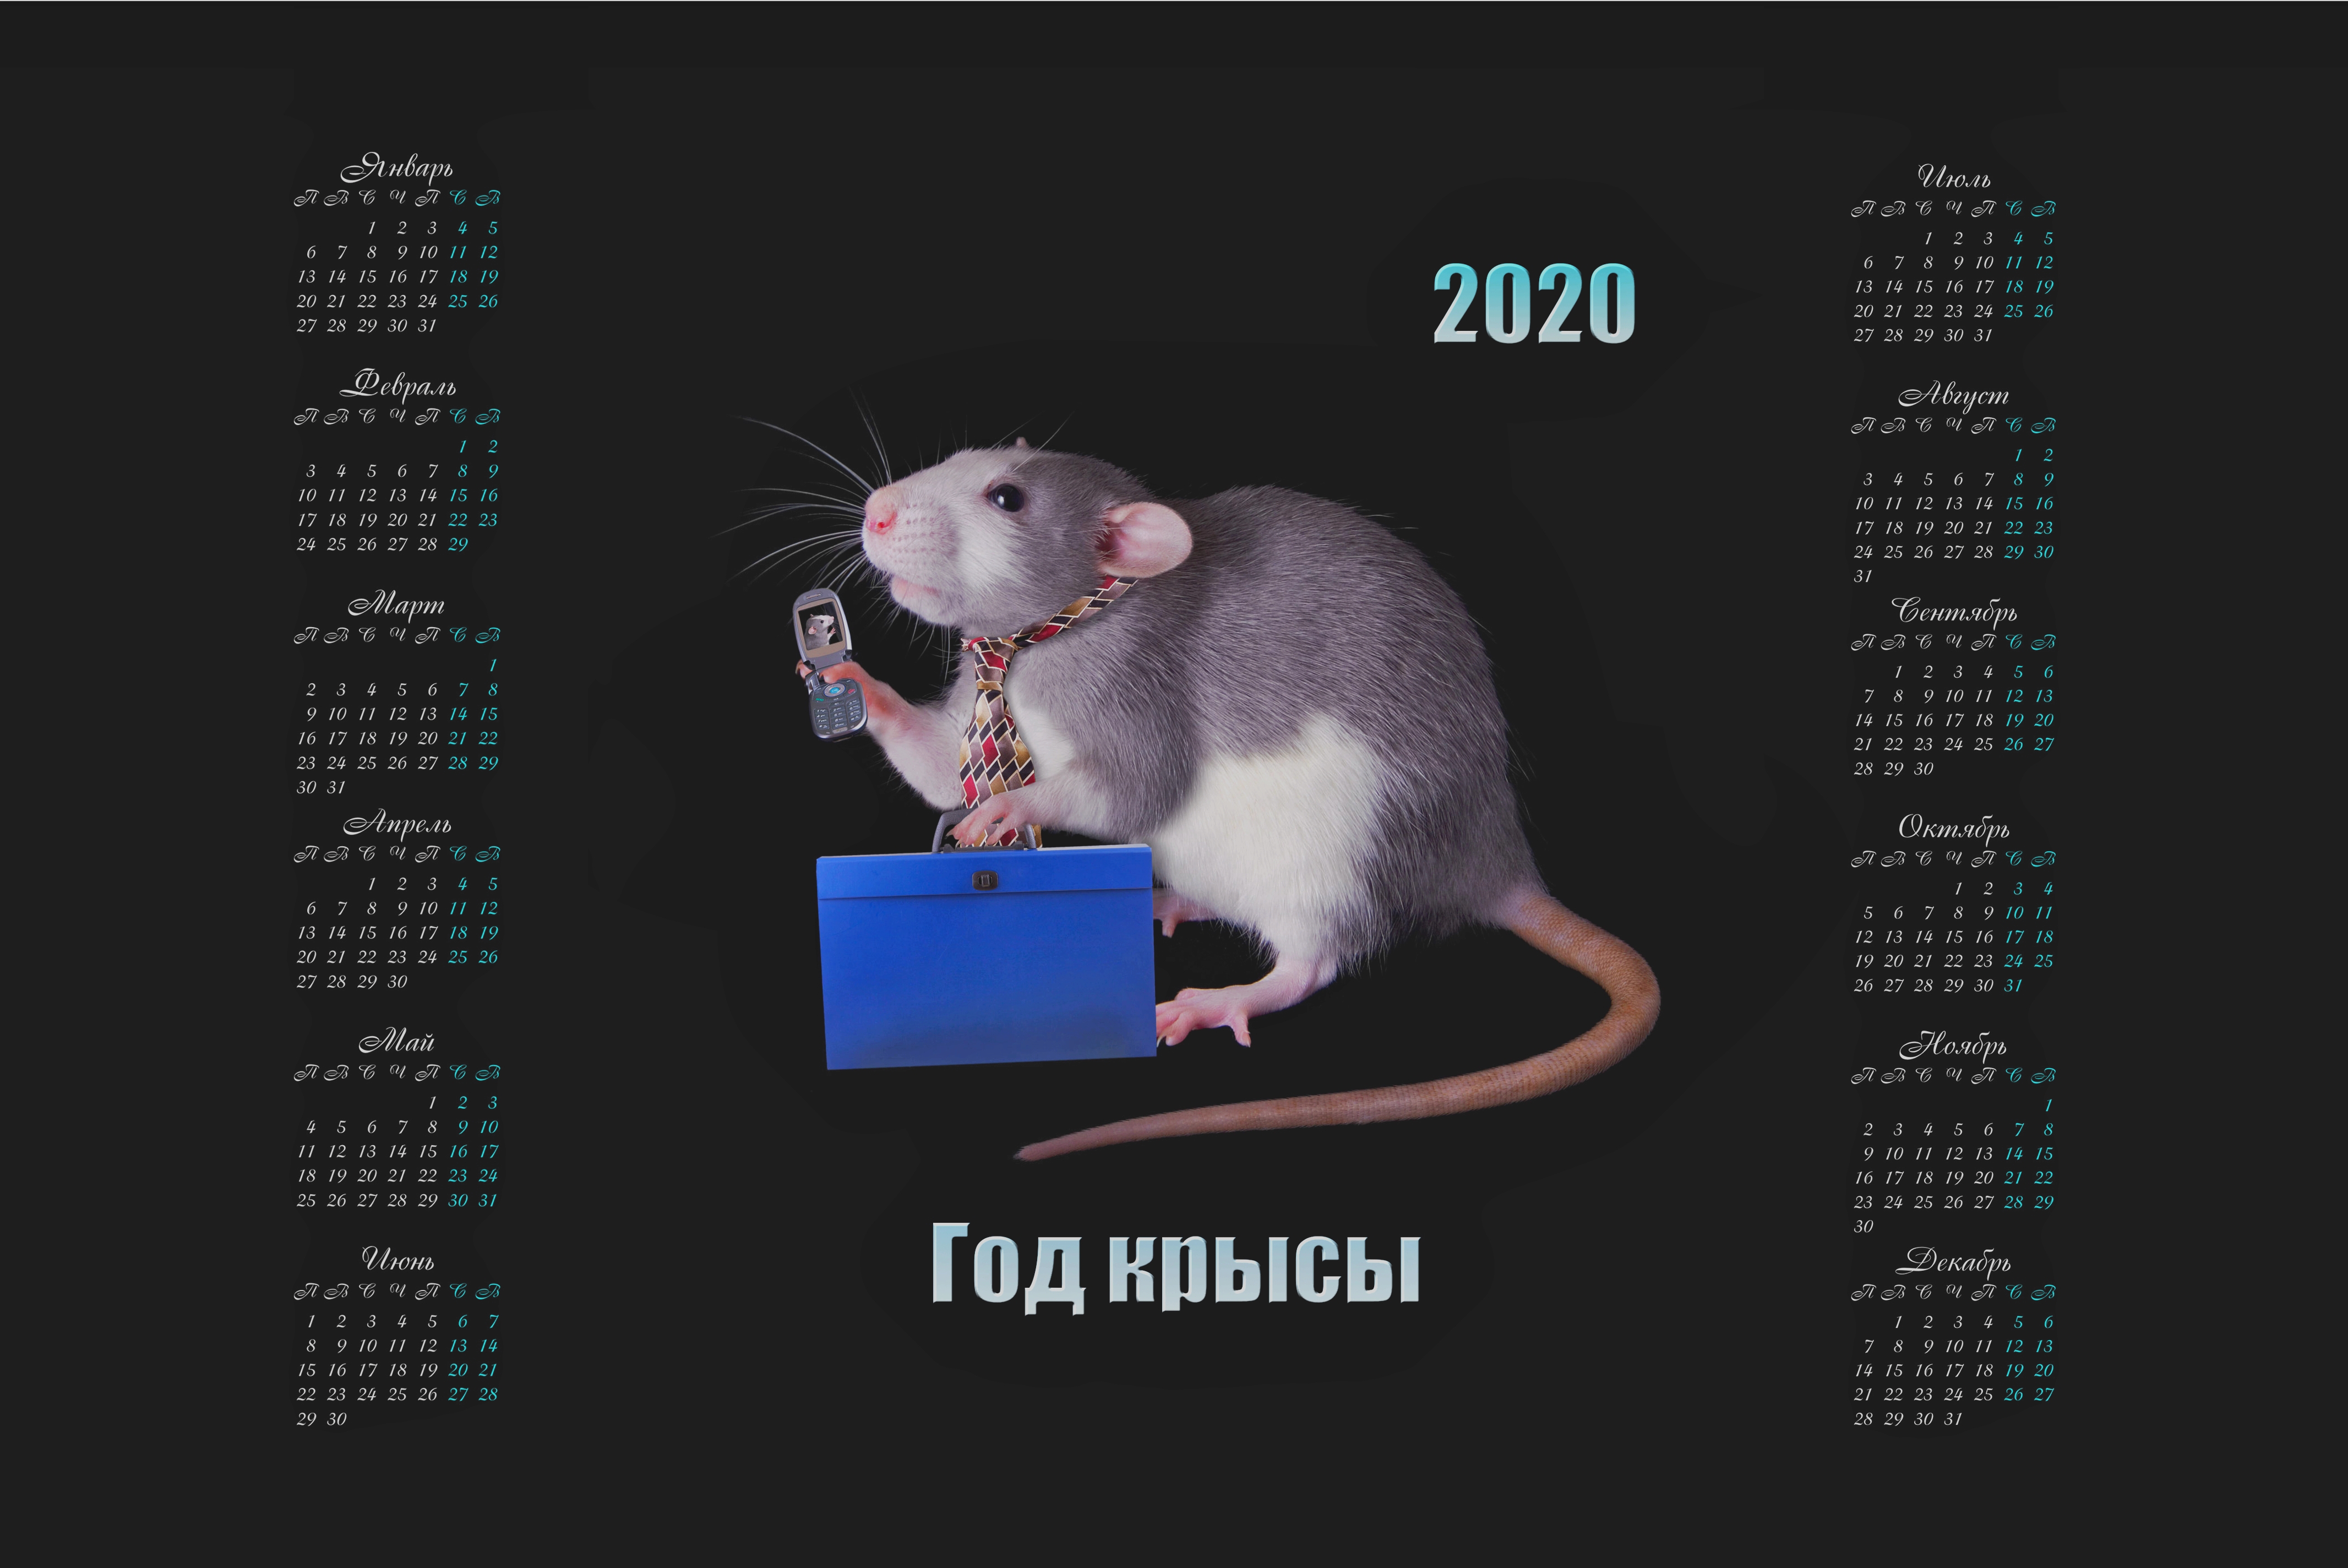 2020年老鼠的日历与移动电话